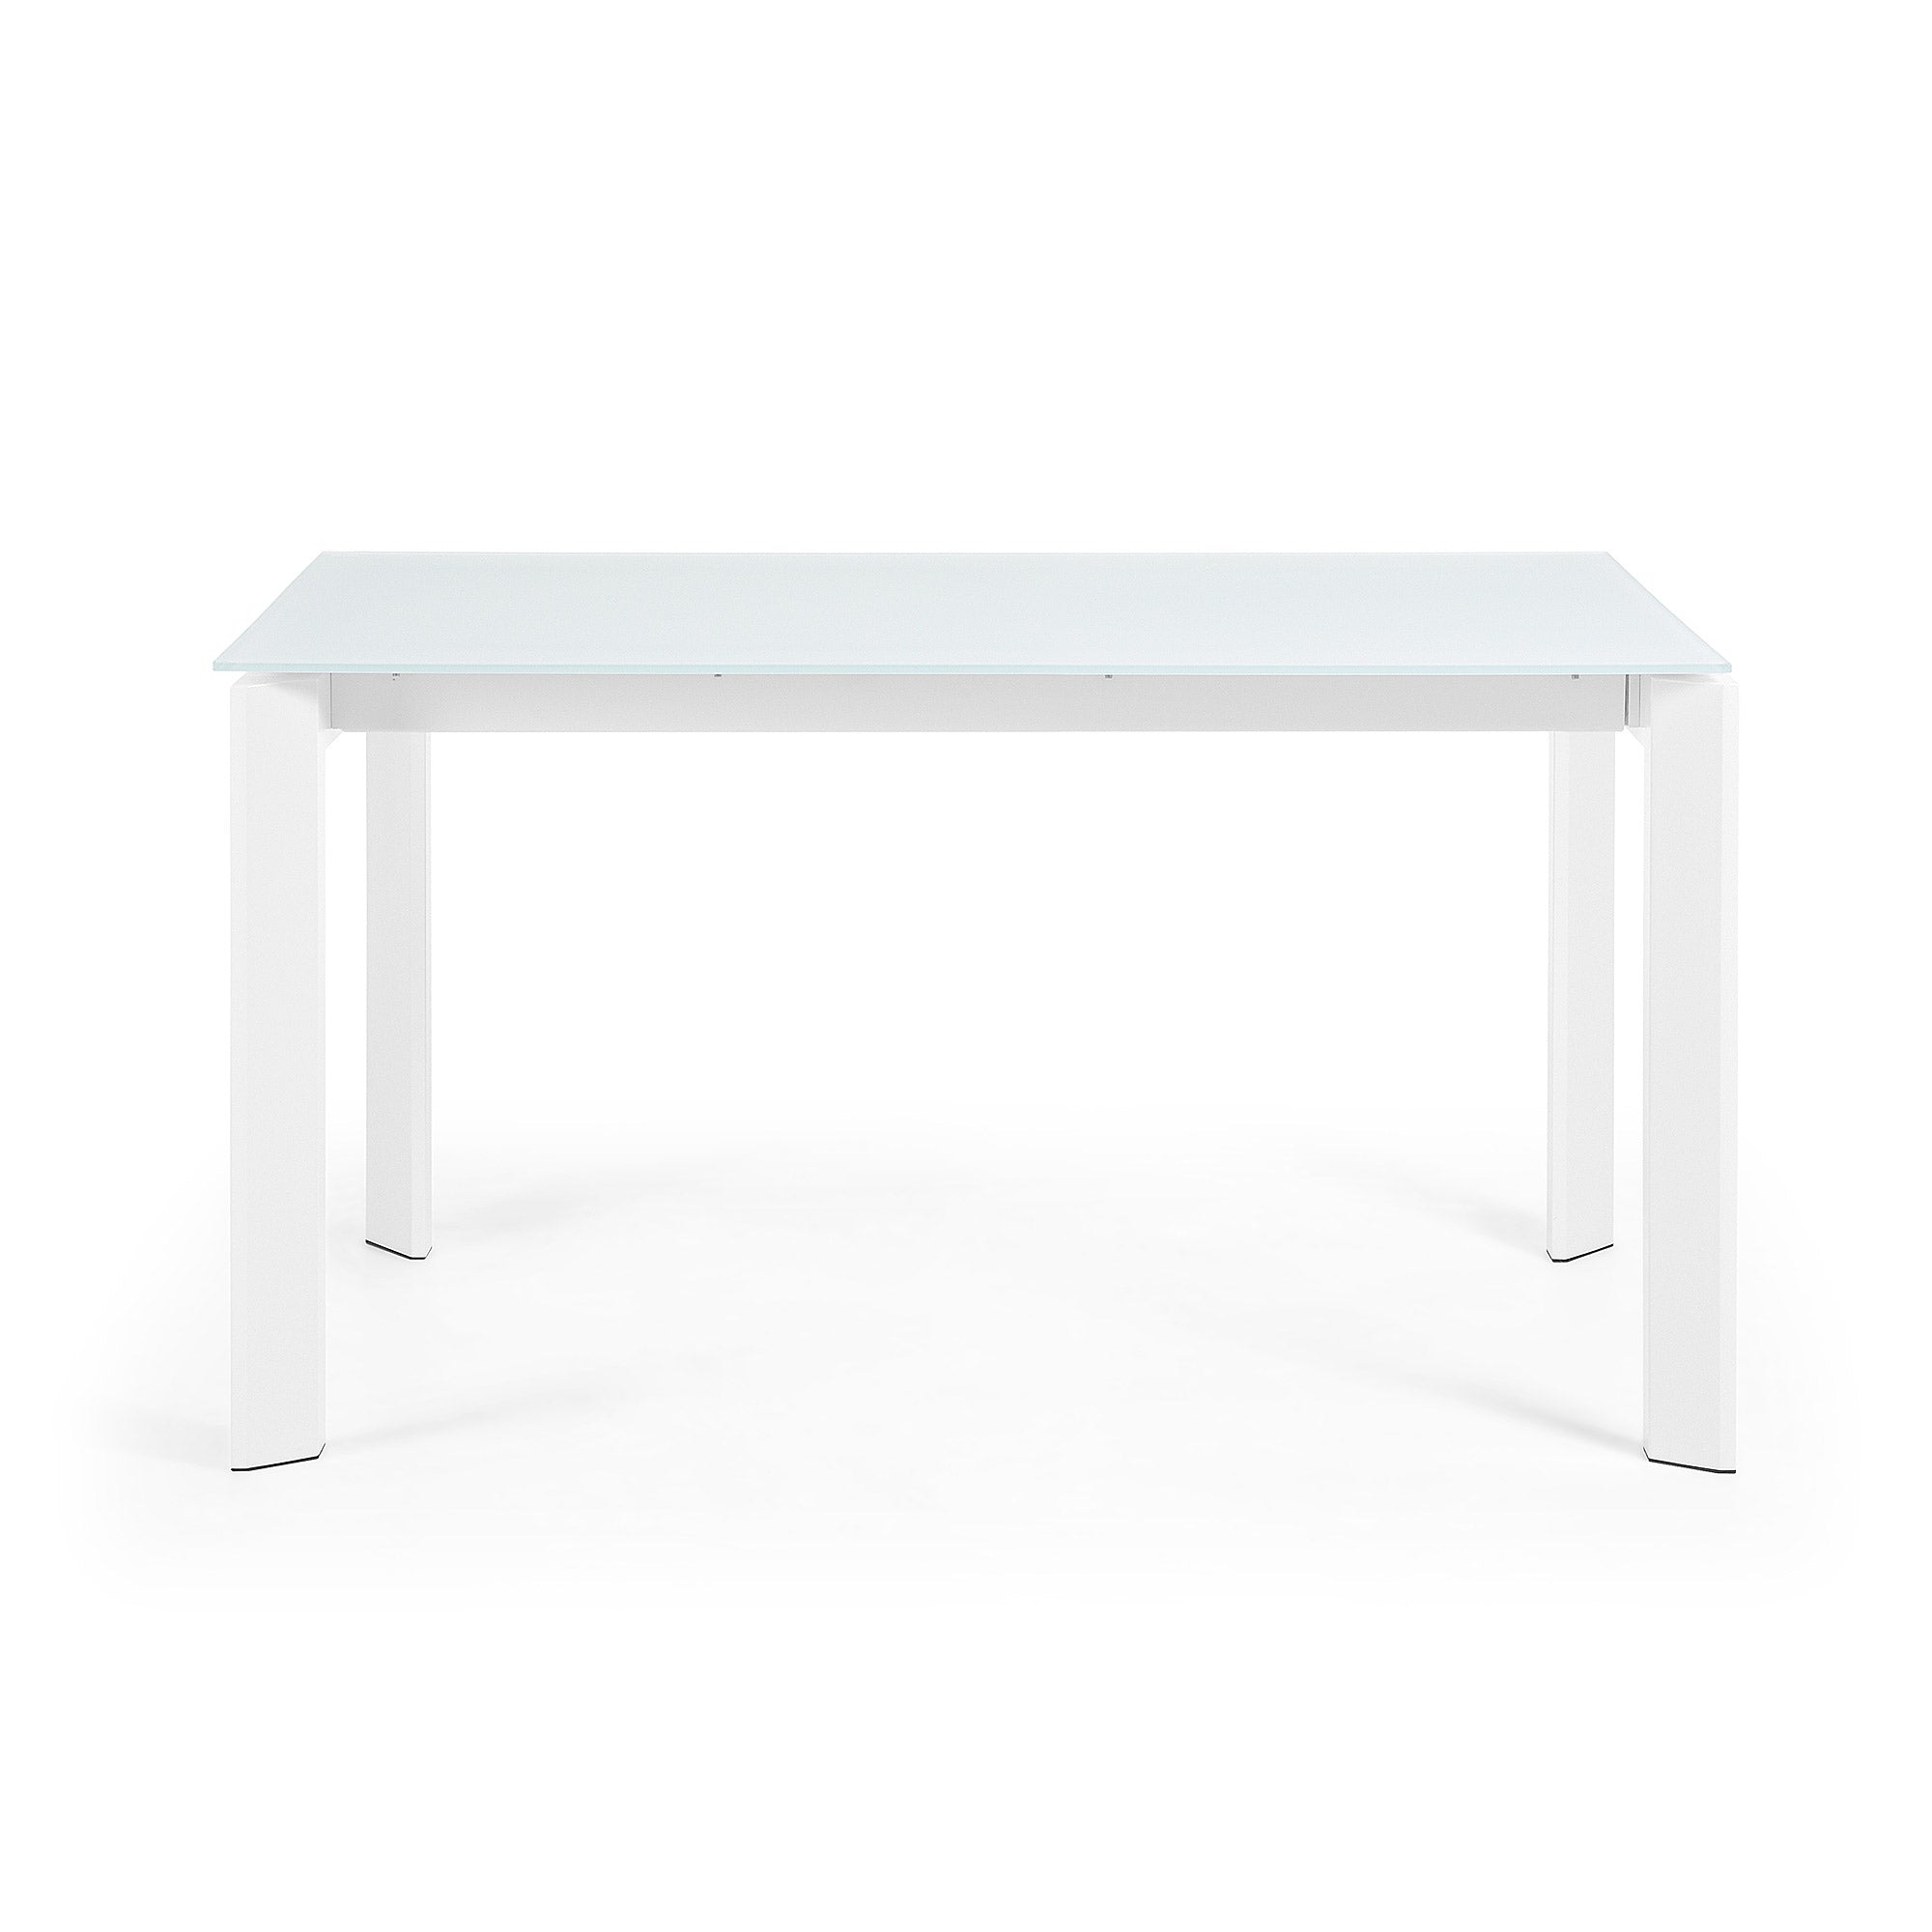 Axis fehér üvegből készült kihúzható asztal fehér acél lábakkal 140 (200) cm